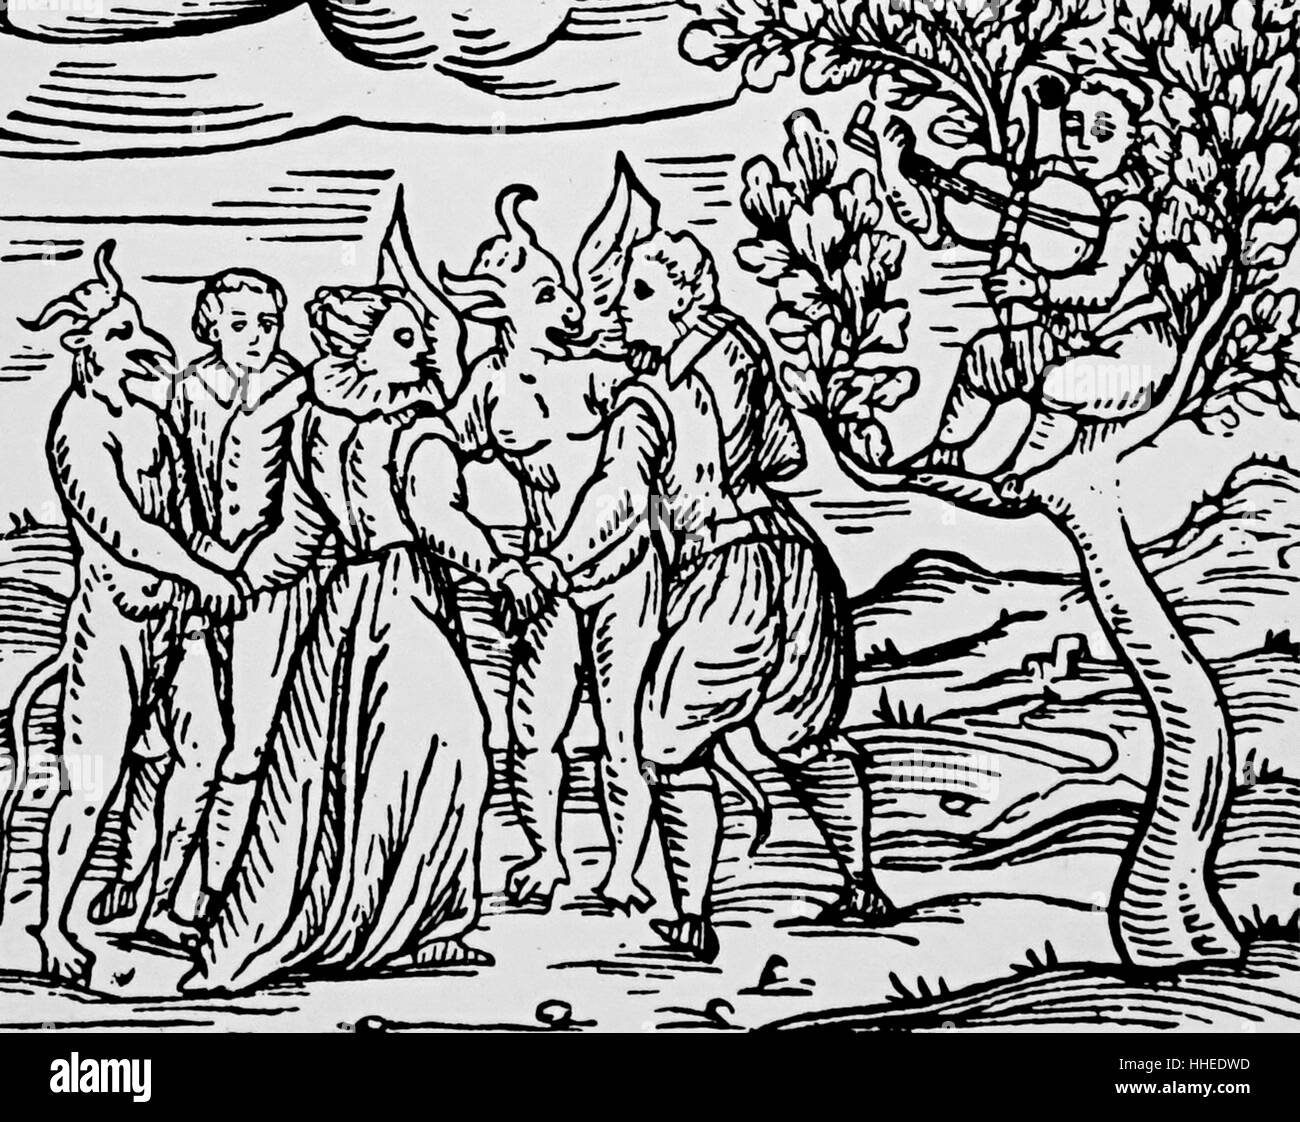 Holzschnitt zeigt eine Gruppe von Hexen und Hexenmeister Tanz mit